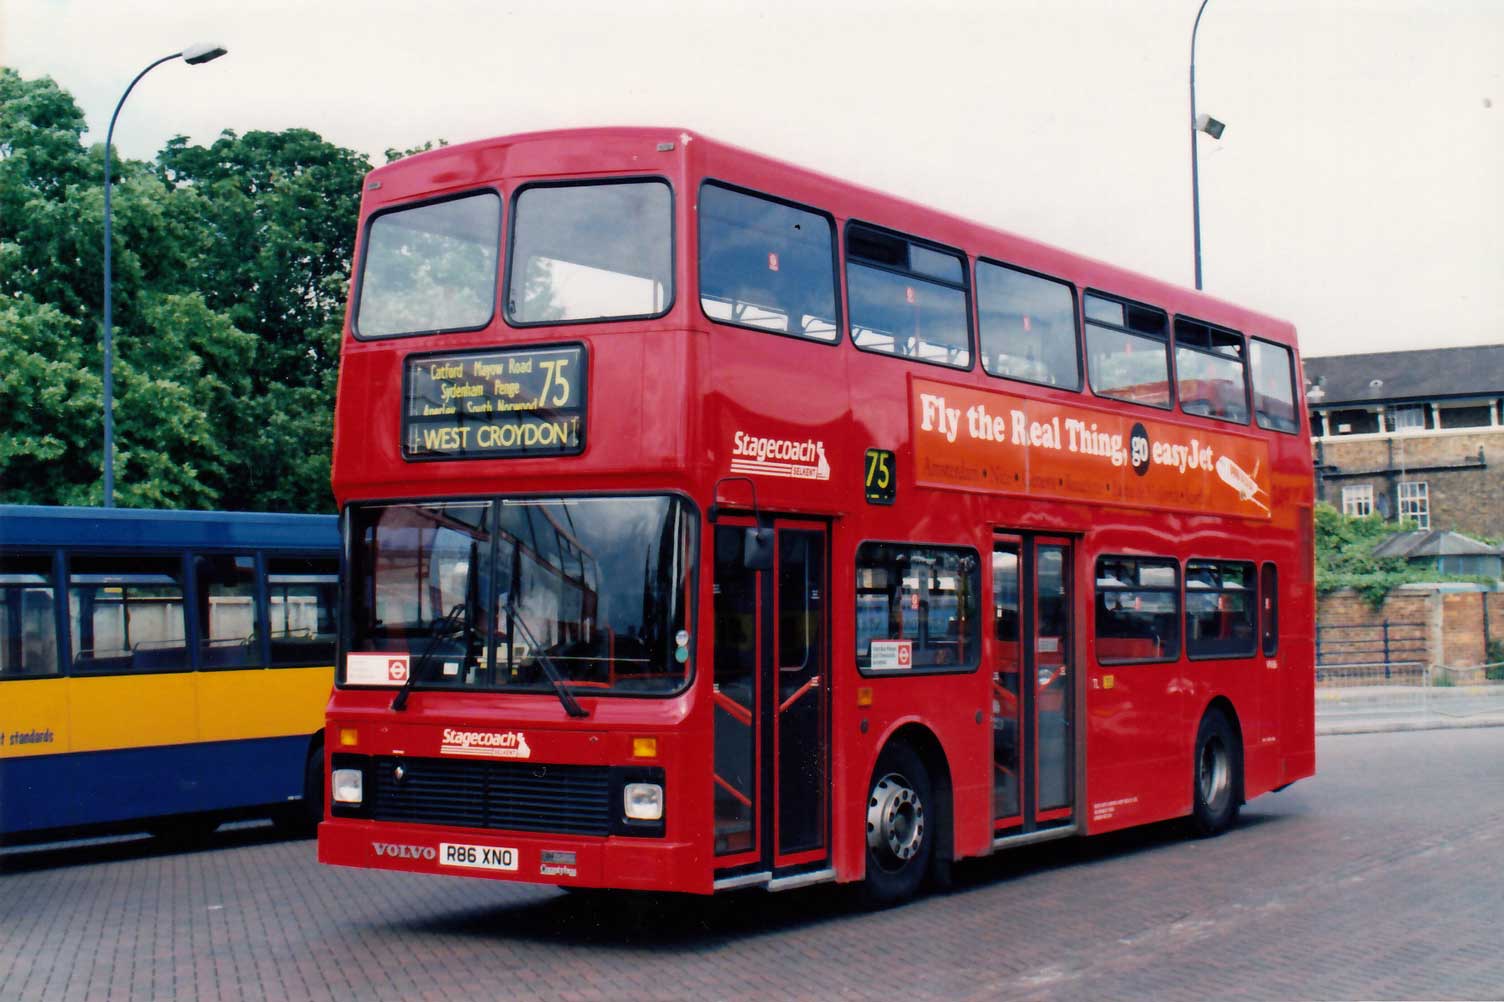 London Bus Route 75